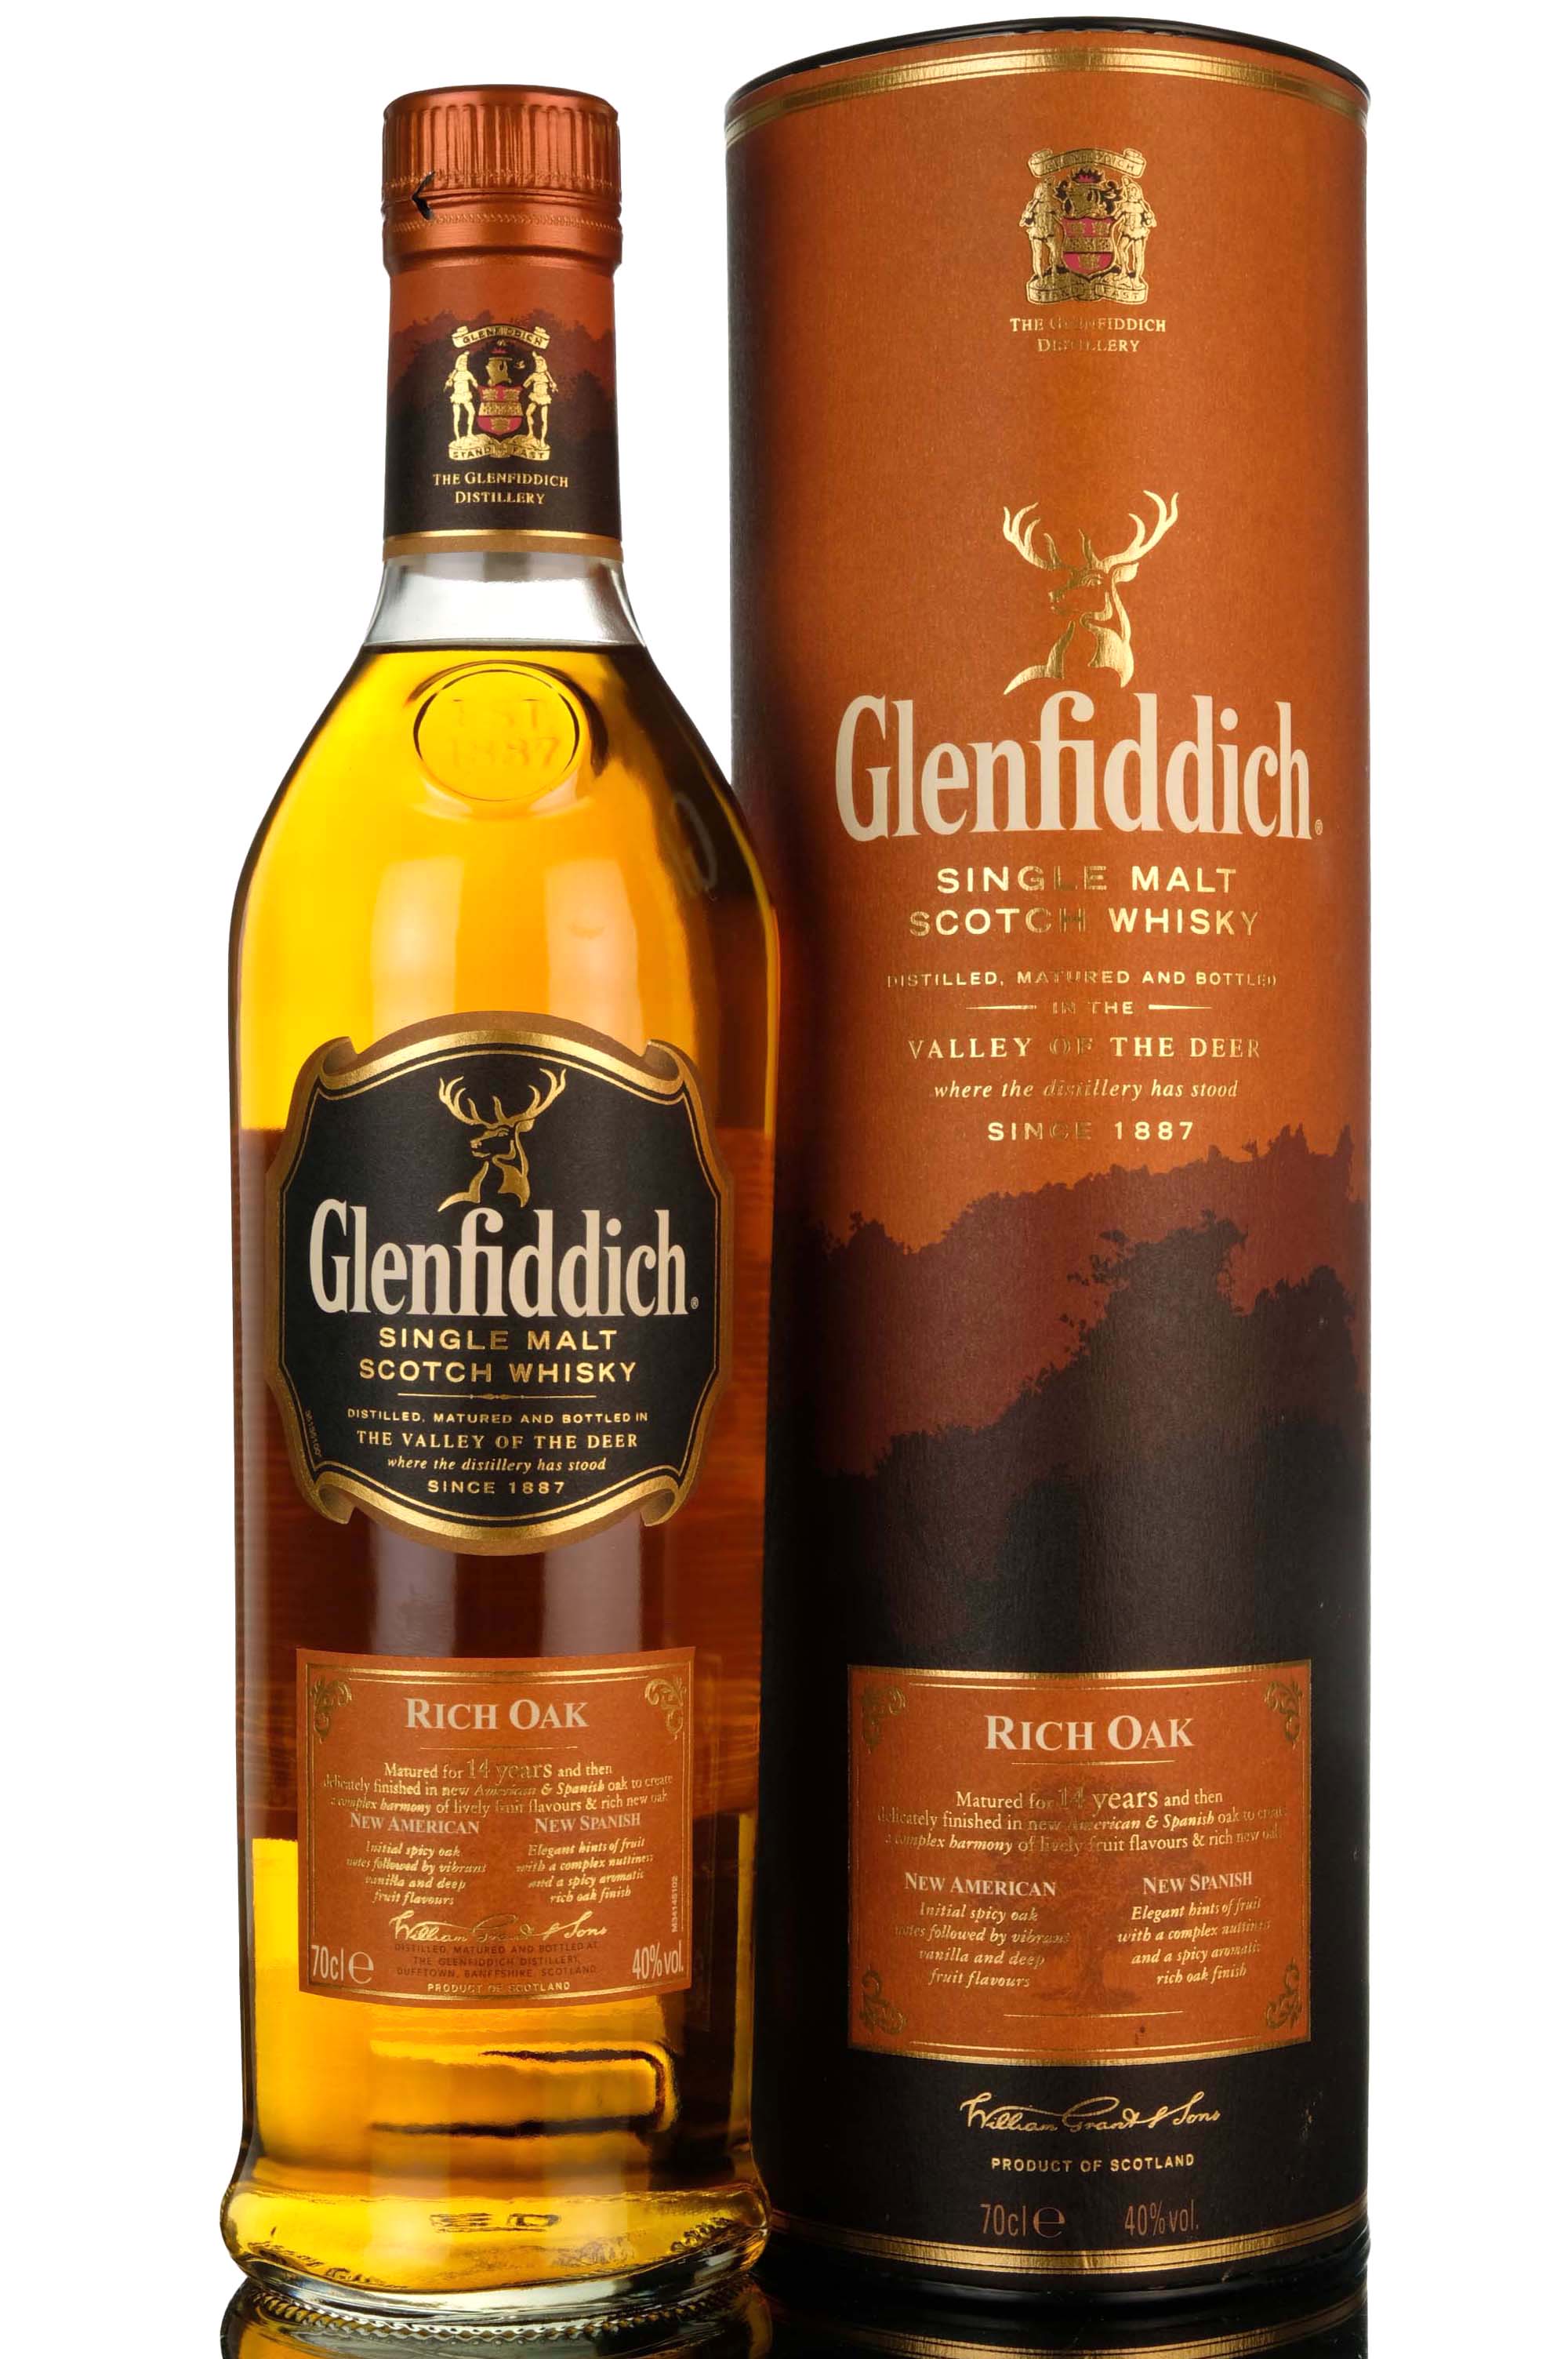 Glenfiddich 14 Year Old - Rich Oak